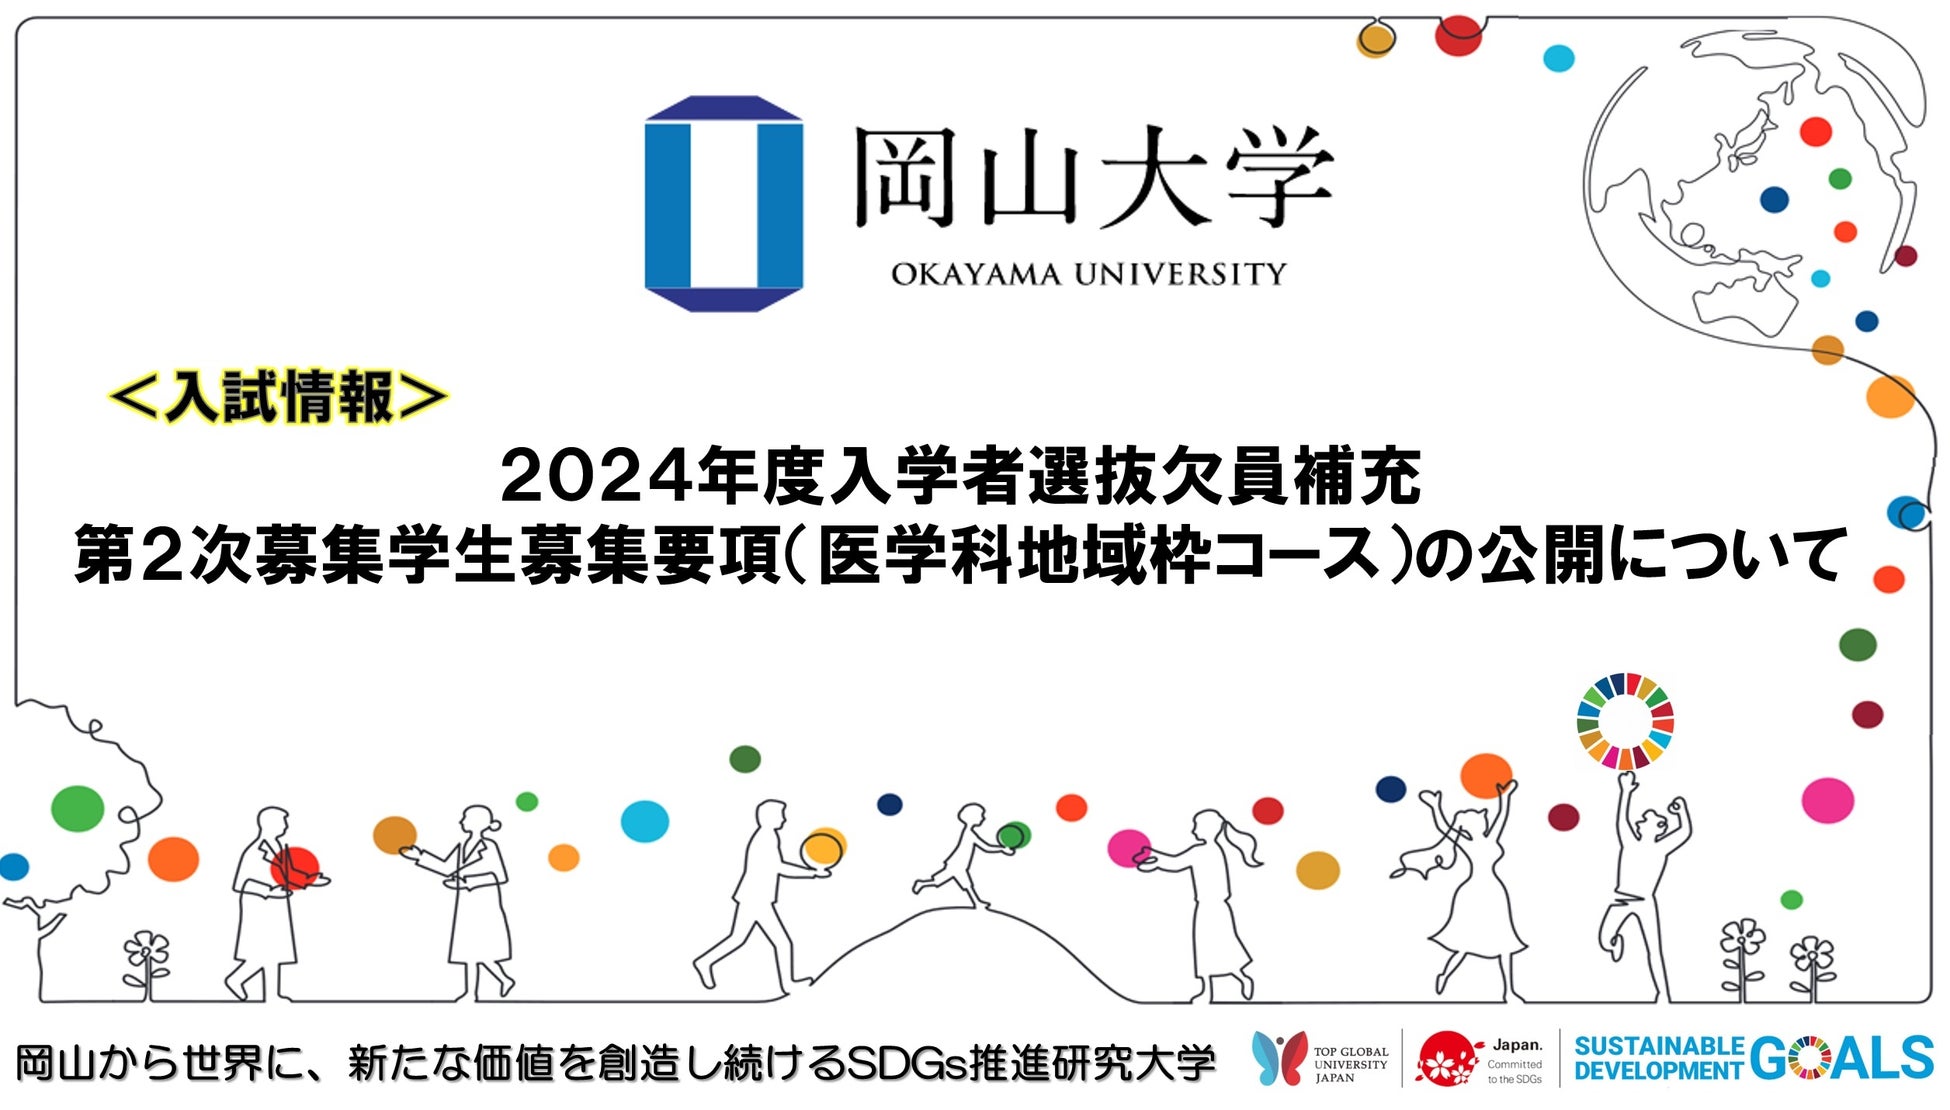 【岡山大学】2024年度入学者選抜欠員補充第2次募集学生募集要項（医学科地域枠コース）の公開について